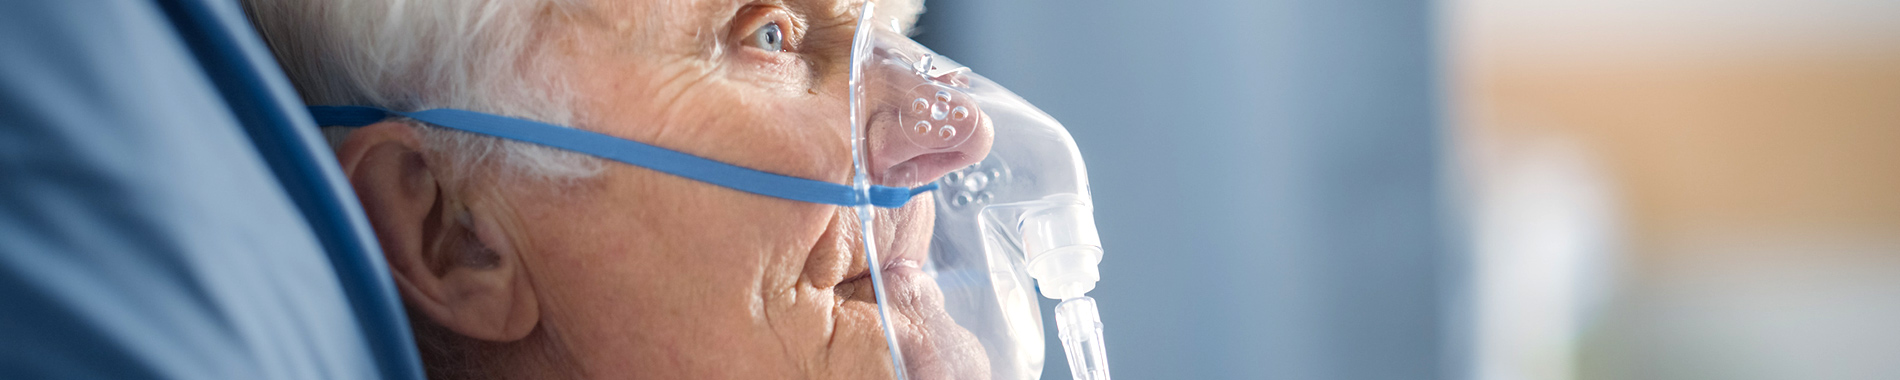 elderly man wearing oxygen mask